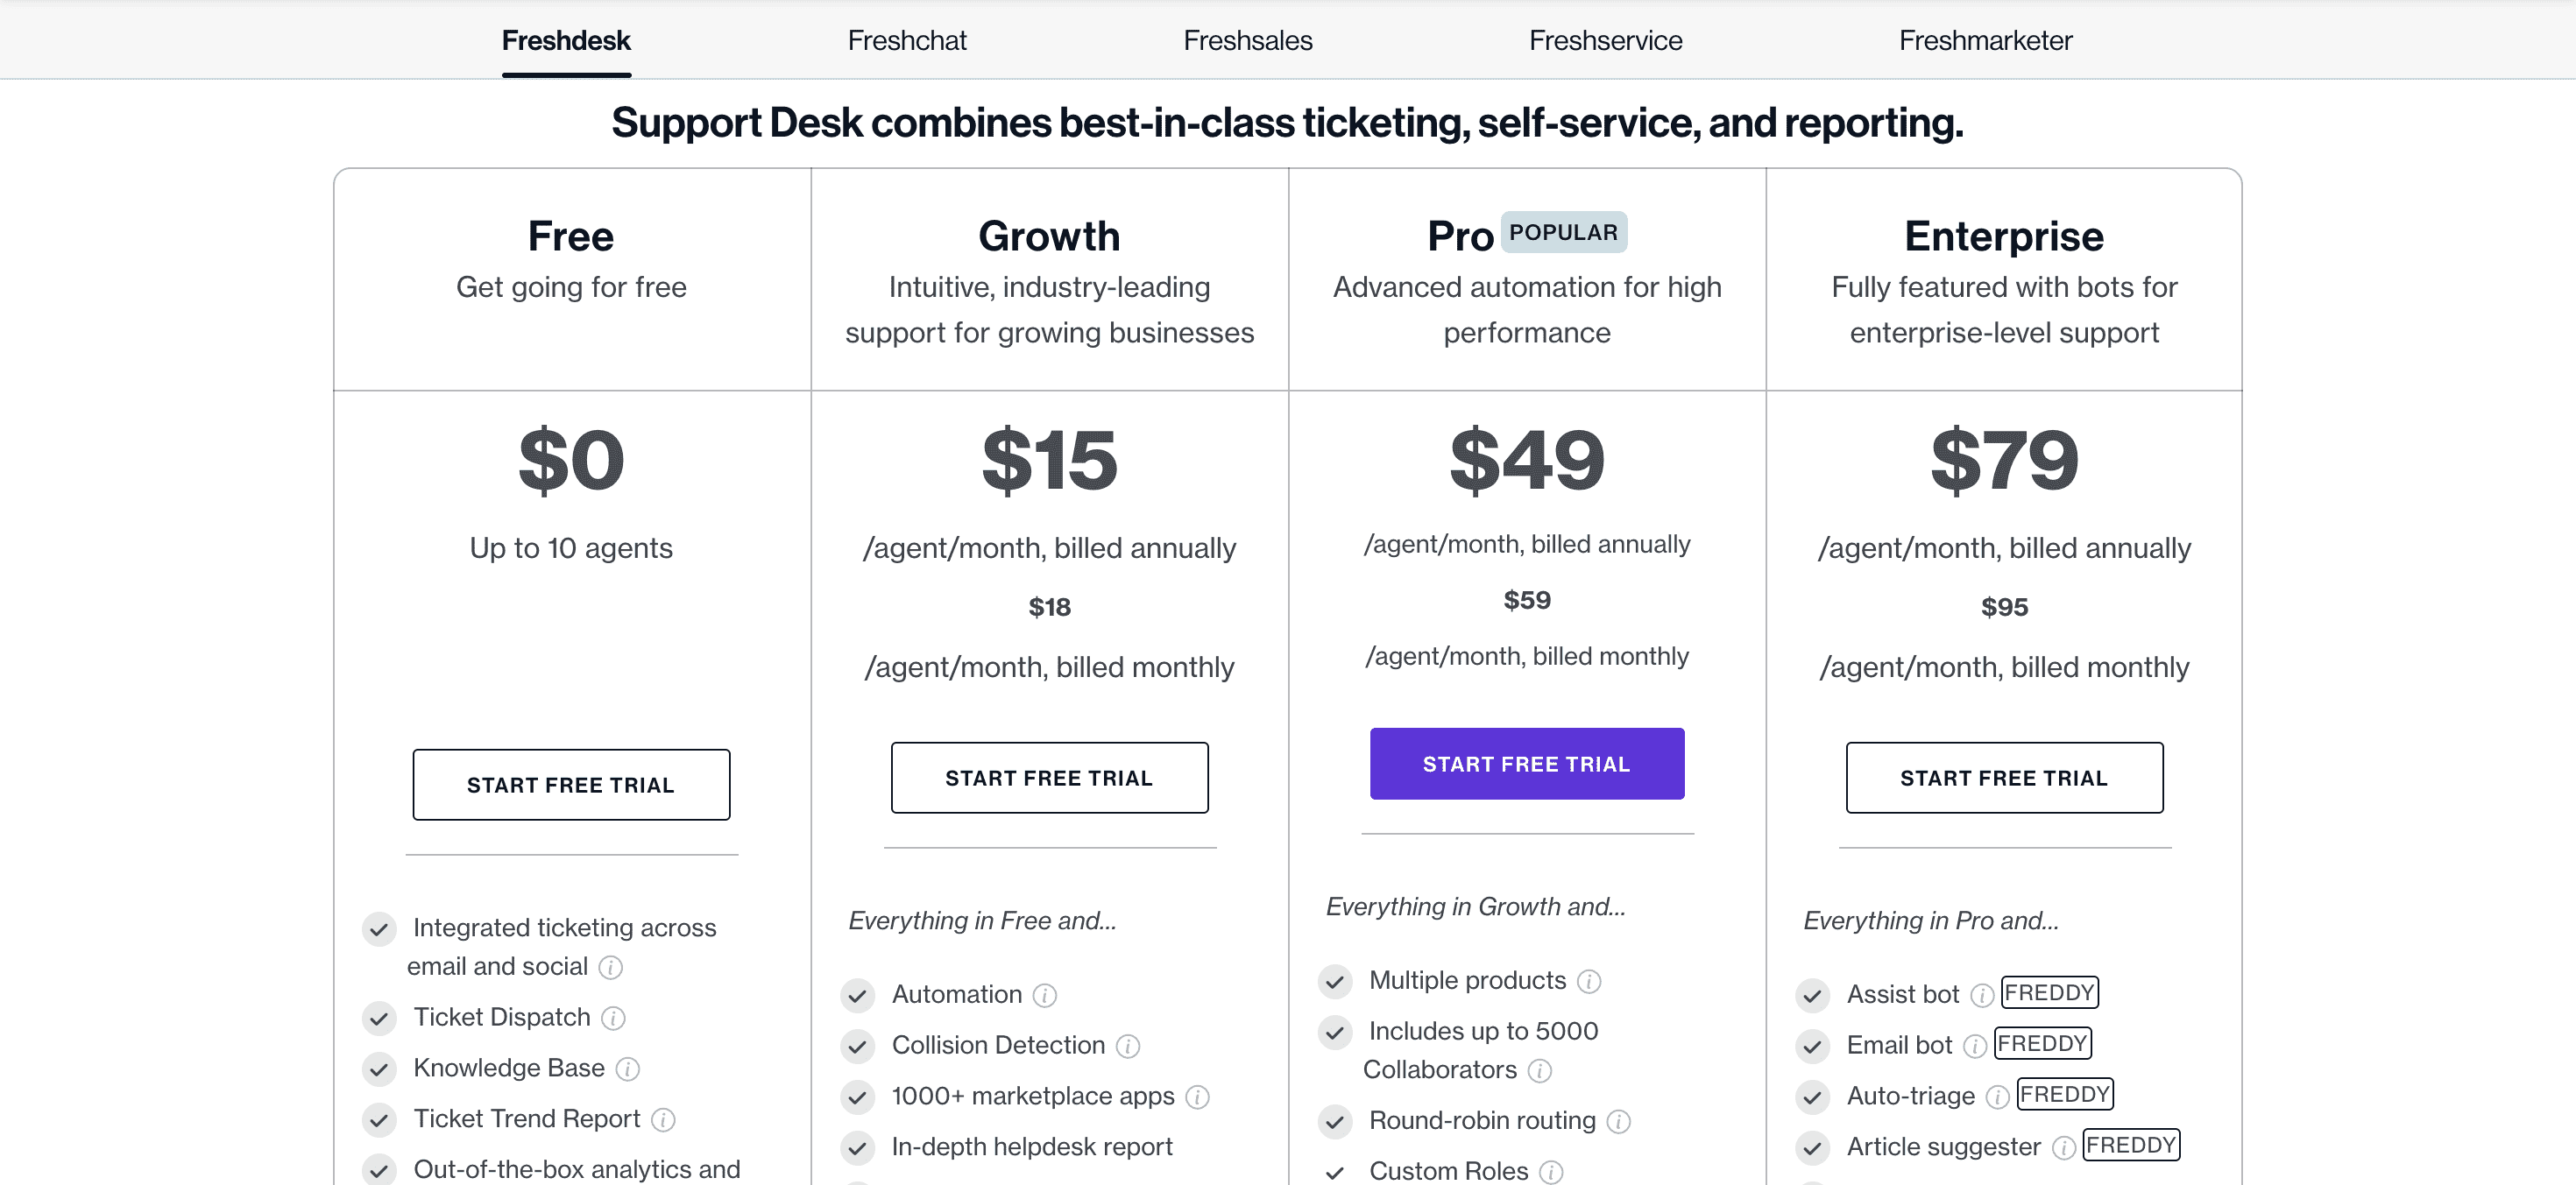 Freshdesk Pricing